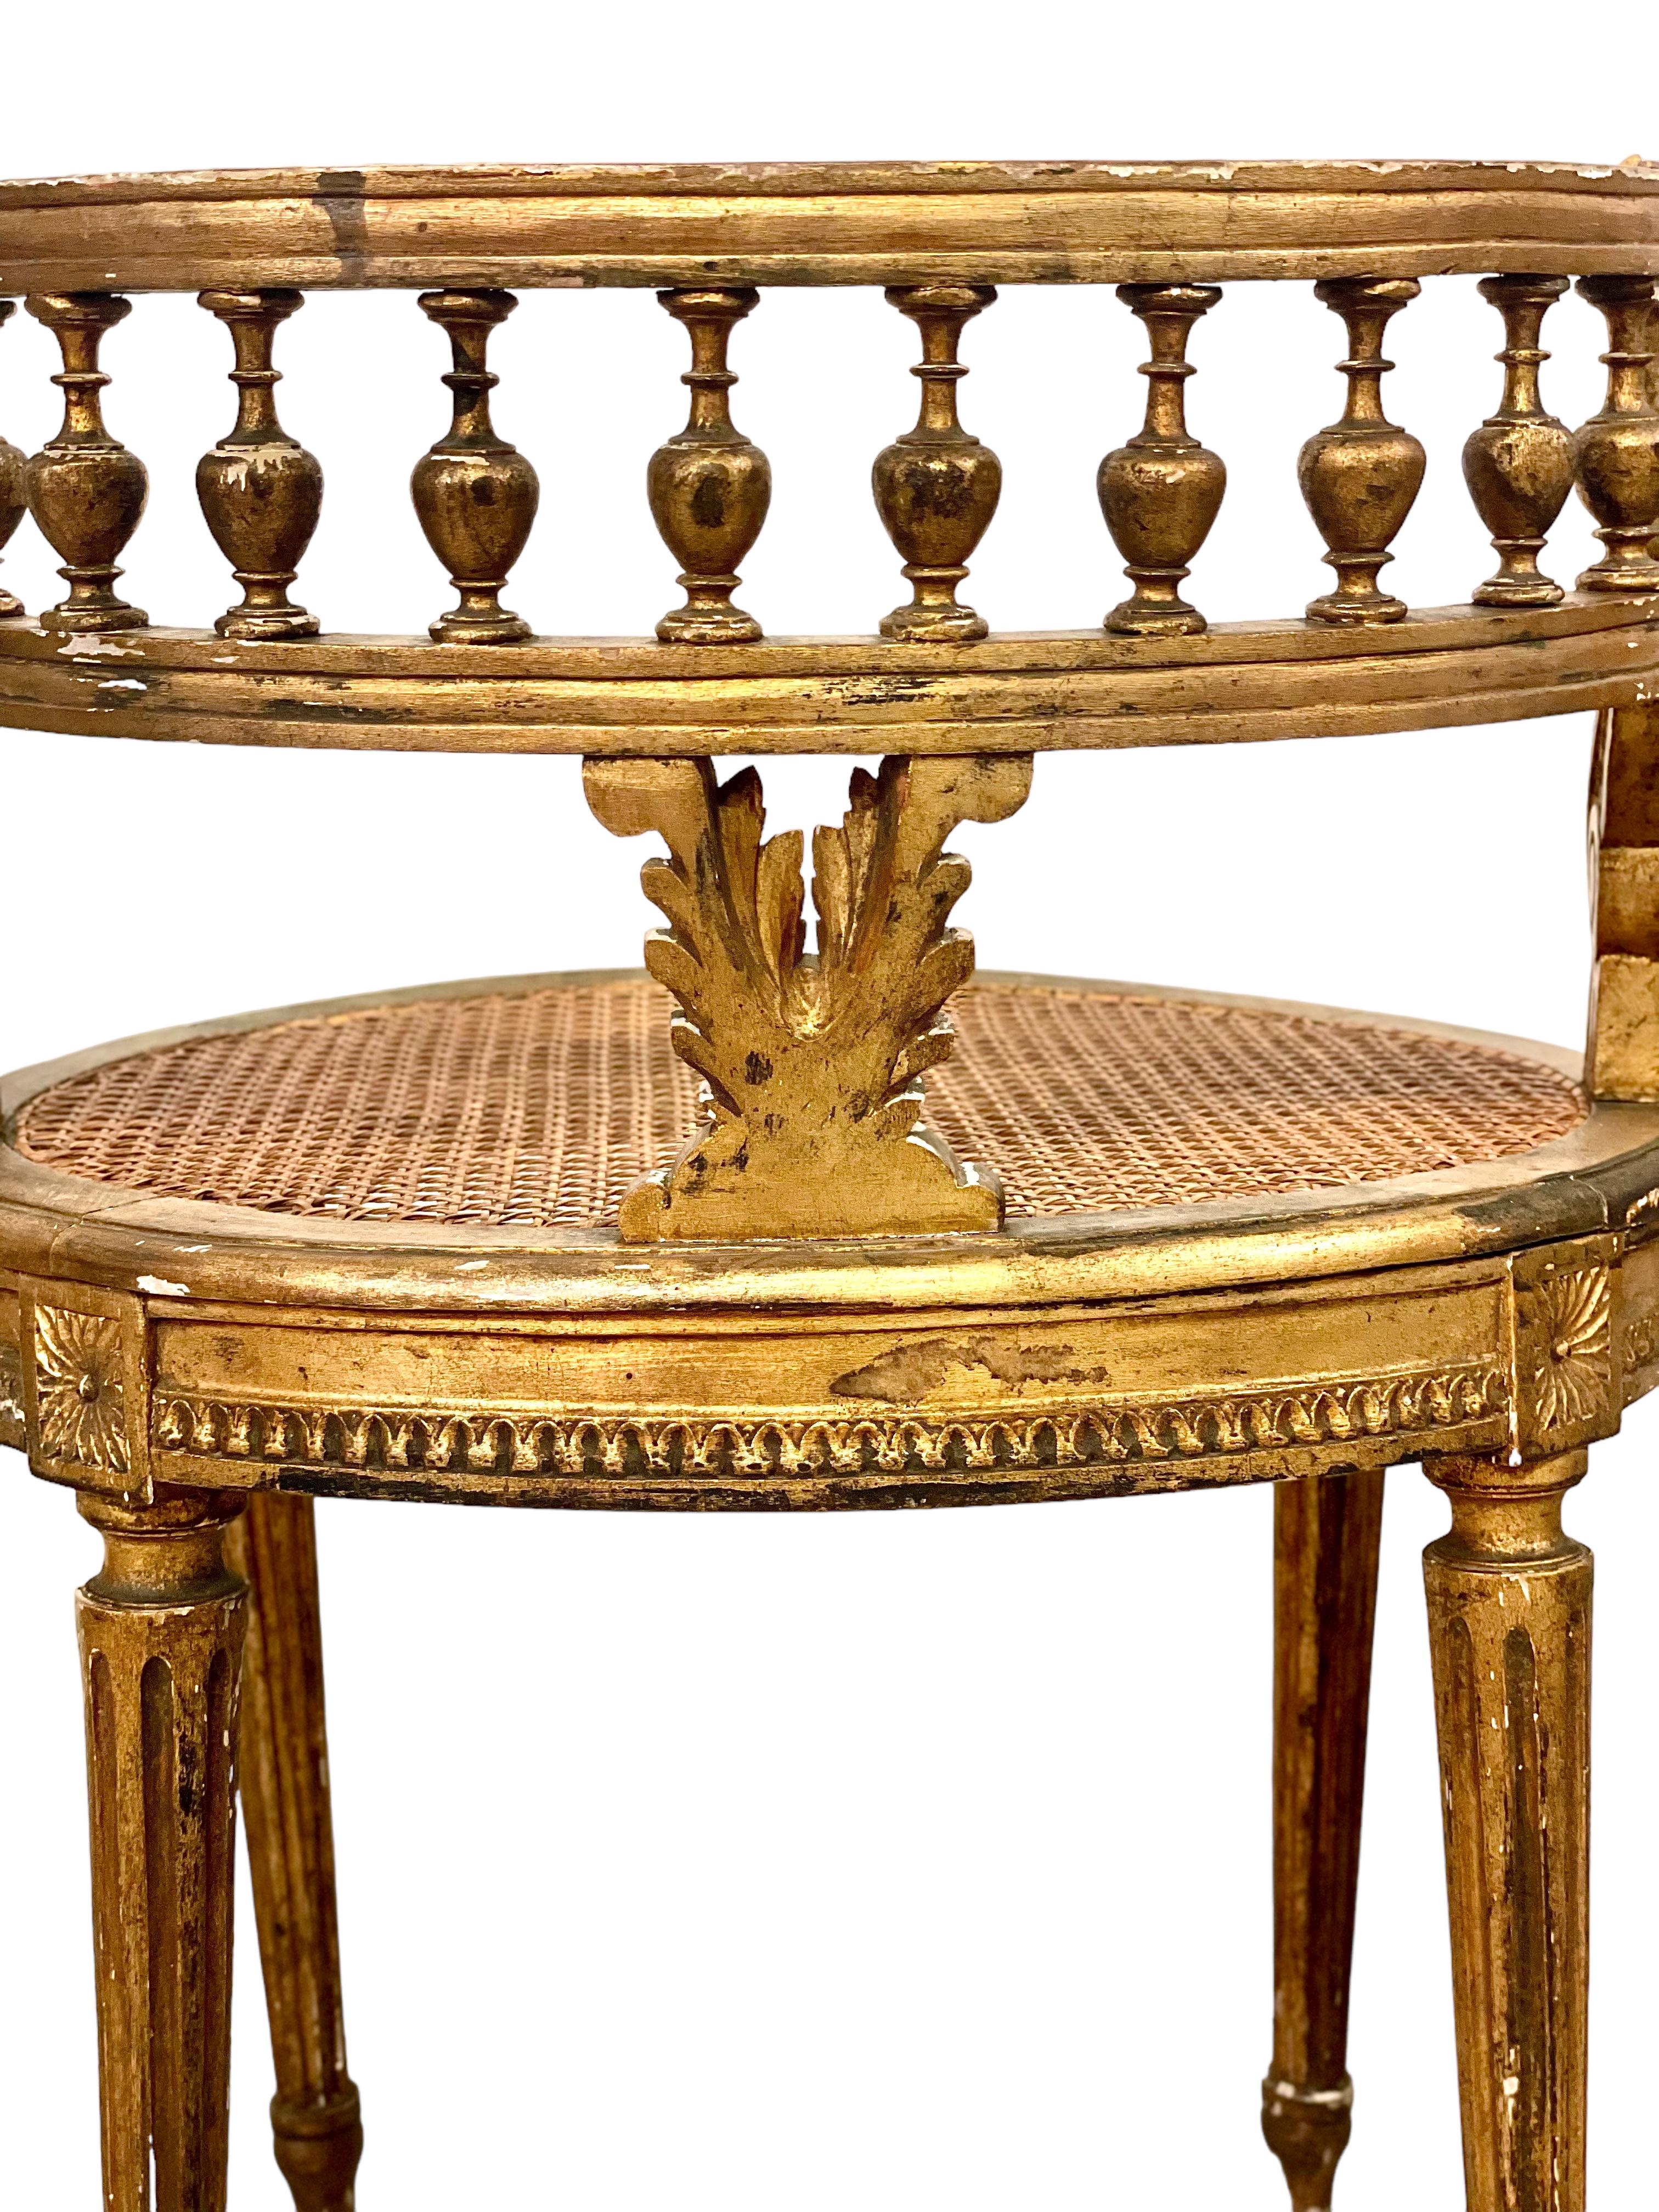 Ein Paar exquisiter Kosmetikstühle im Louis XVI-Stil mit leichten, ovalen Sitzflächen und extravaganten, umlaufenden Galerie-Rückenlehnen. Diese Stühle sind wunderbare Beispiele französischer Handwerkskunst. Sie zeichnen sich durch aufwändige